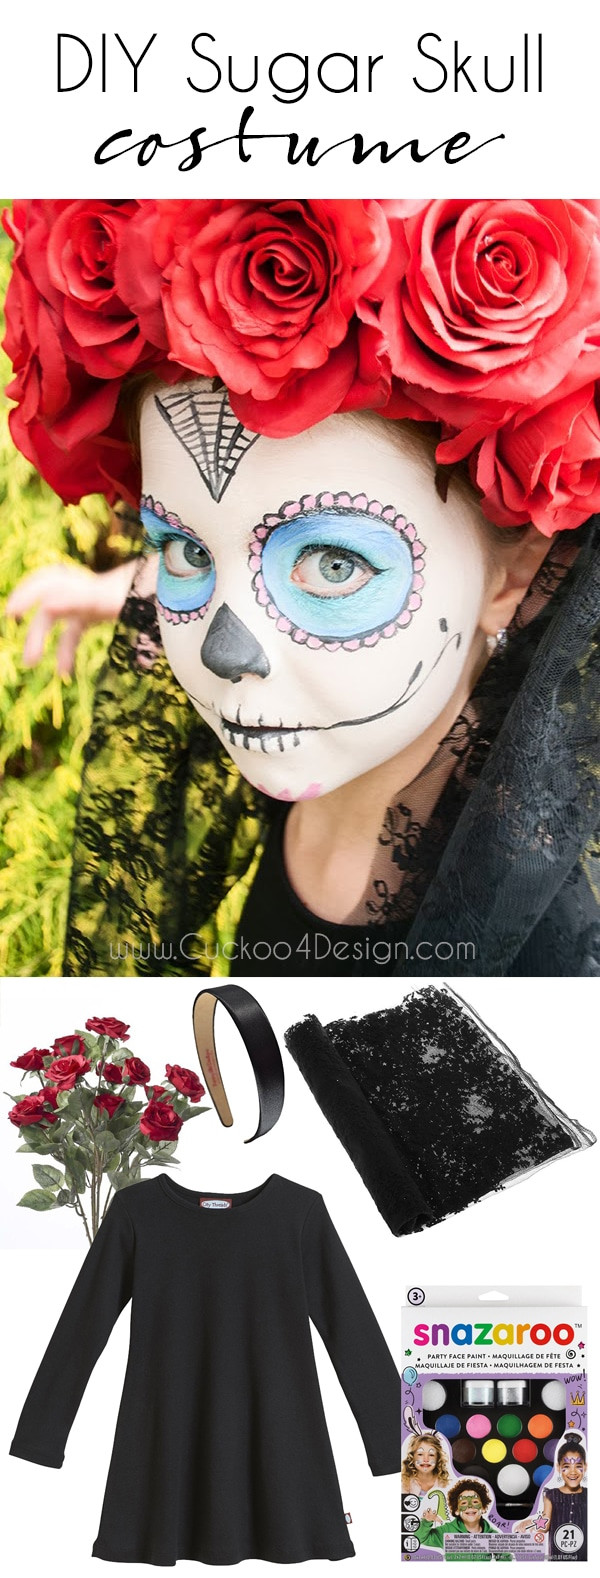 Sugar Skull Costume DIY
 Sugar Skull Costume DIY